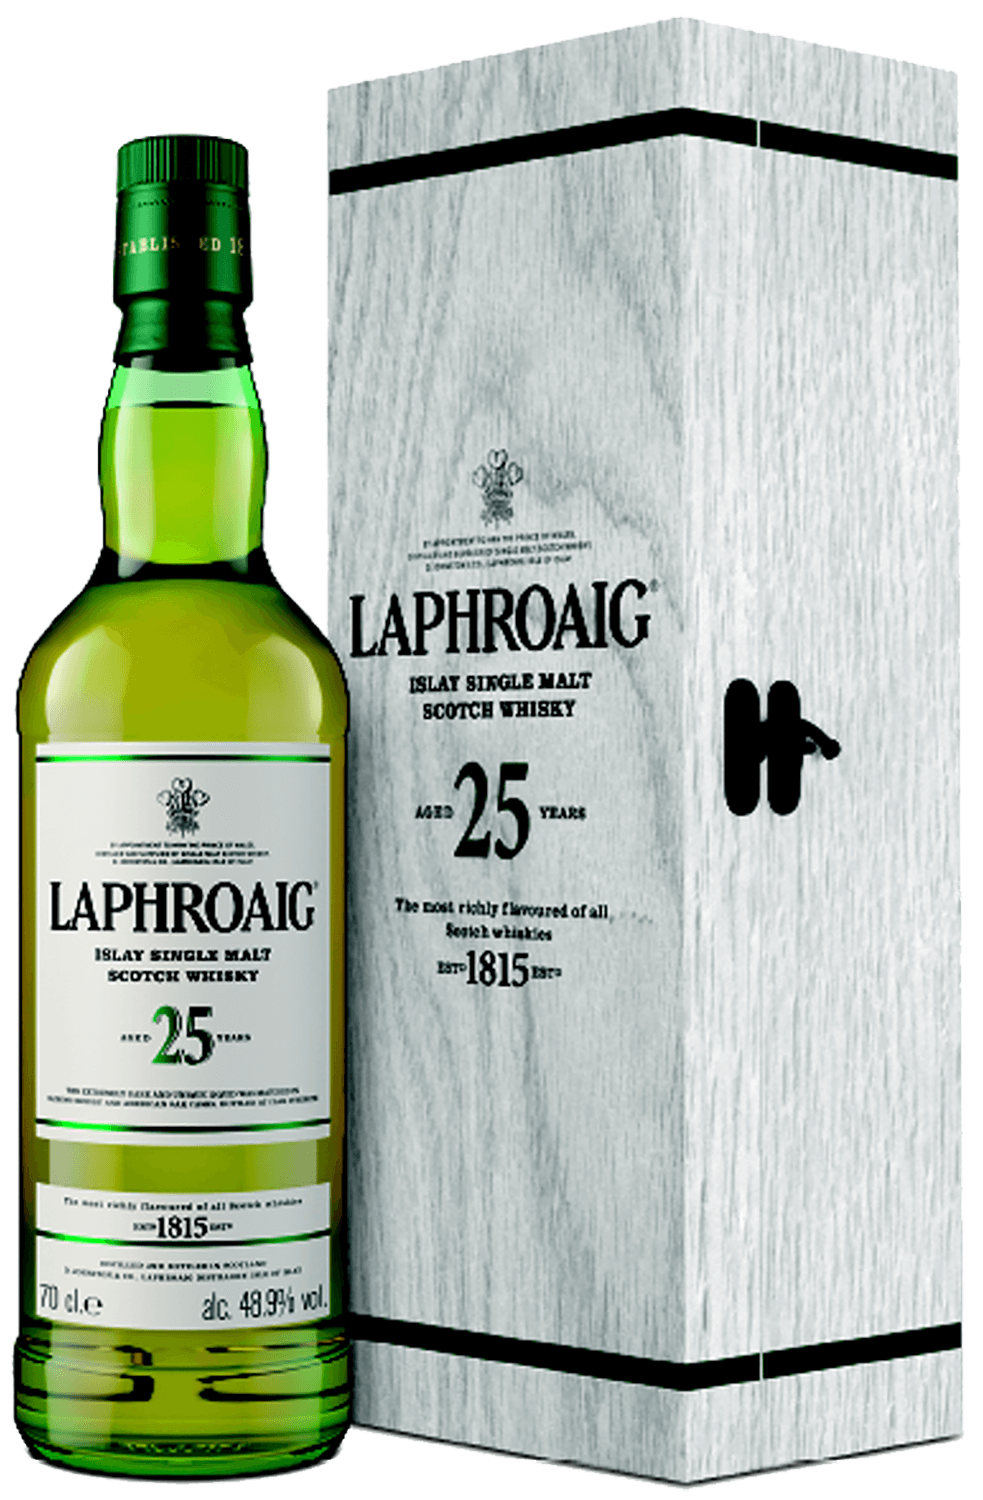 Laphroaig 25 y.o. Islay Single Malt Scotch Whisky (gift box) bowmore 15 y o islay single malt scotch whisky gift box